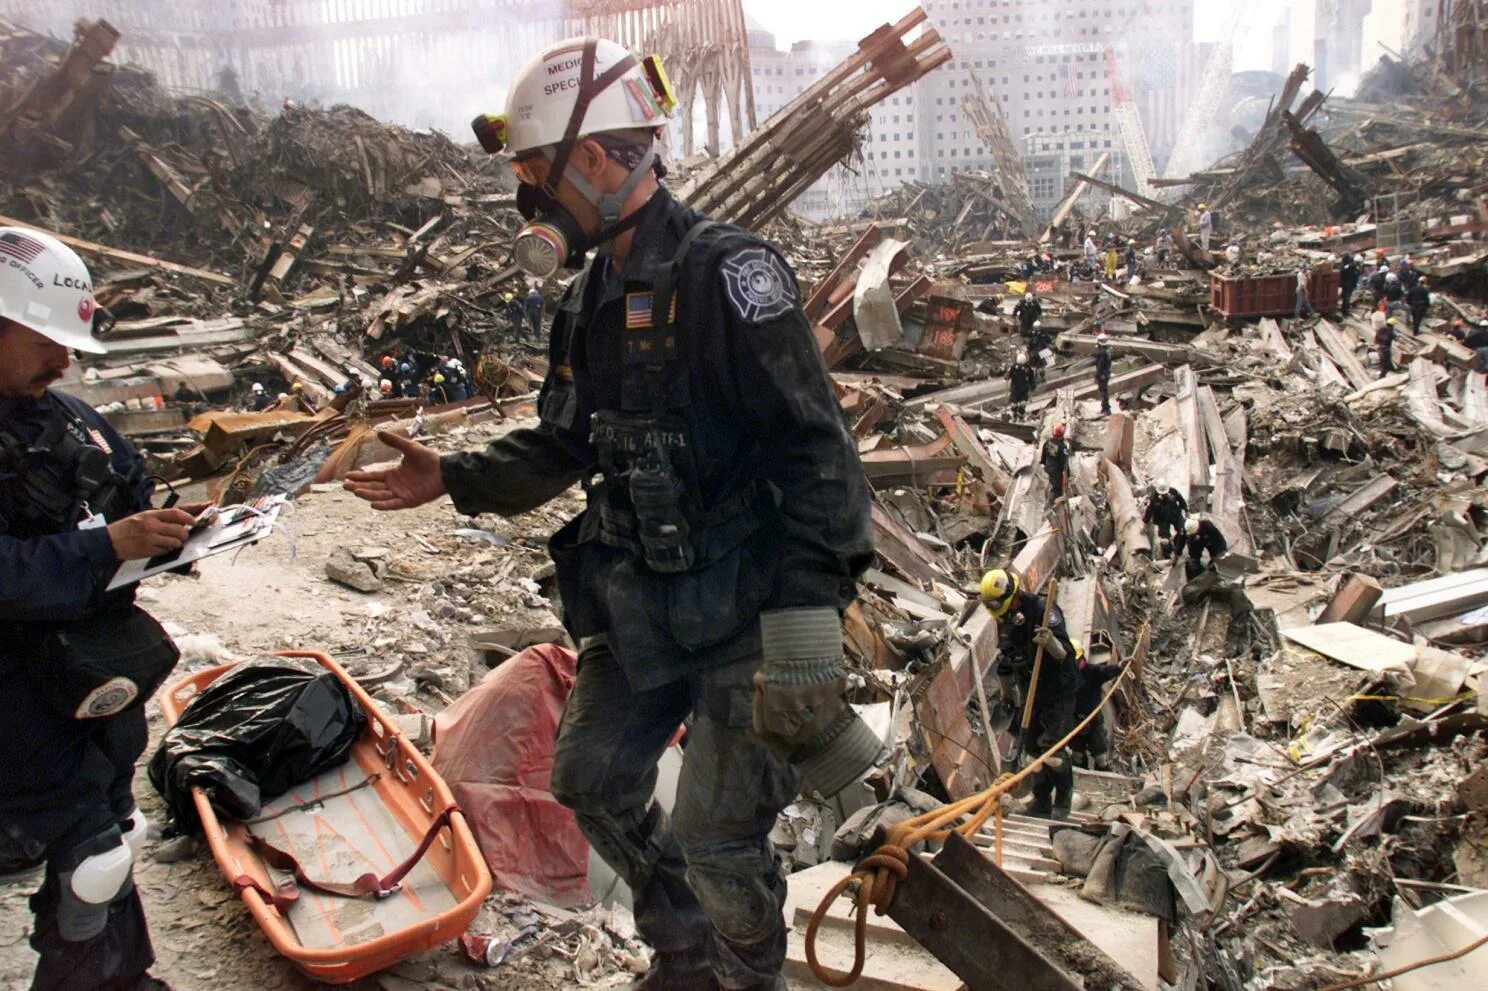 11 Сентября 2001 башни Пентагон. Башни Близнецы 11 сентября жертвы. Спасатели 11 сентября 2001. 11 сентября сколько погибших 2001 башни